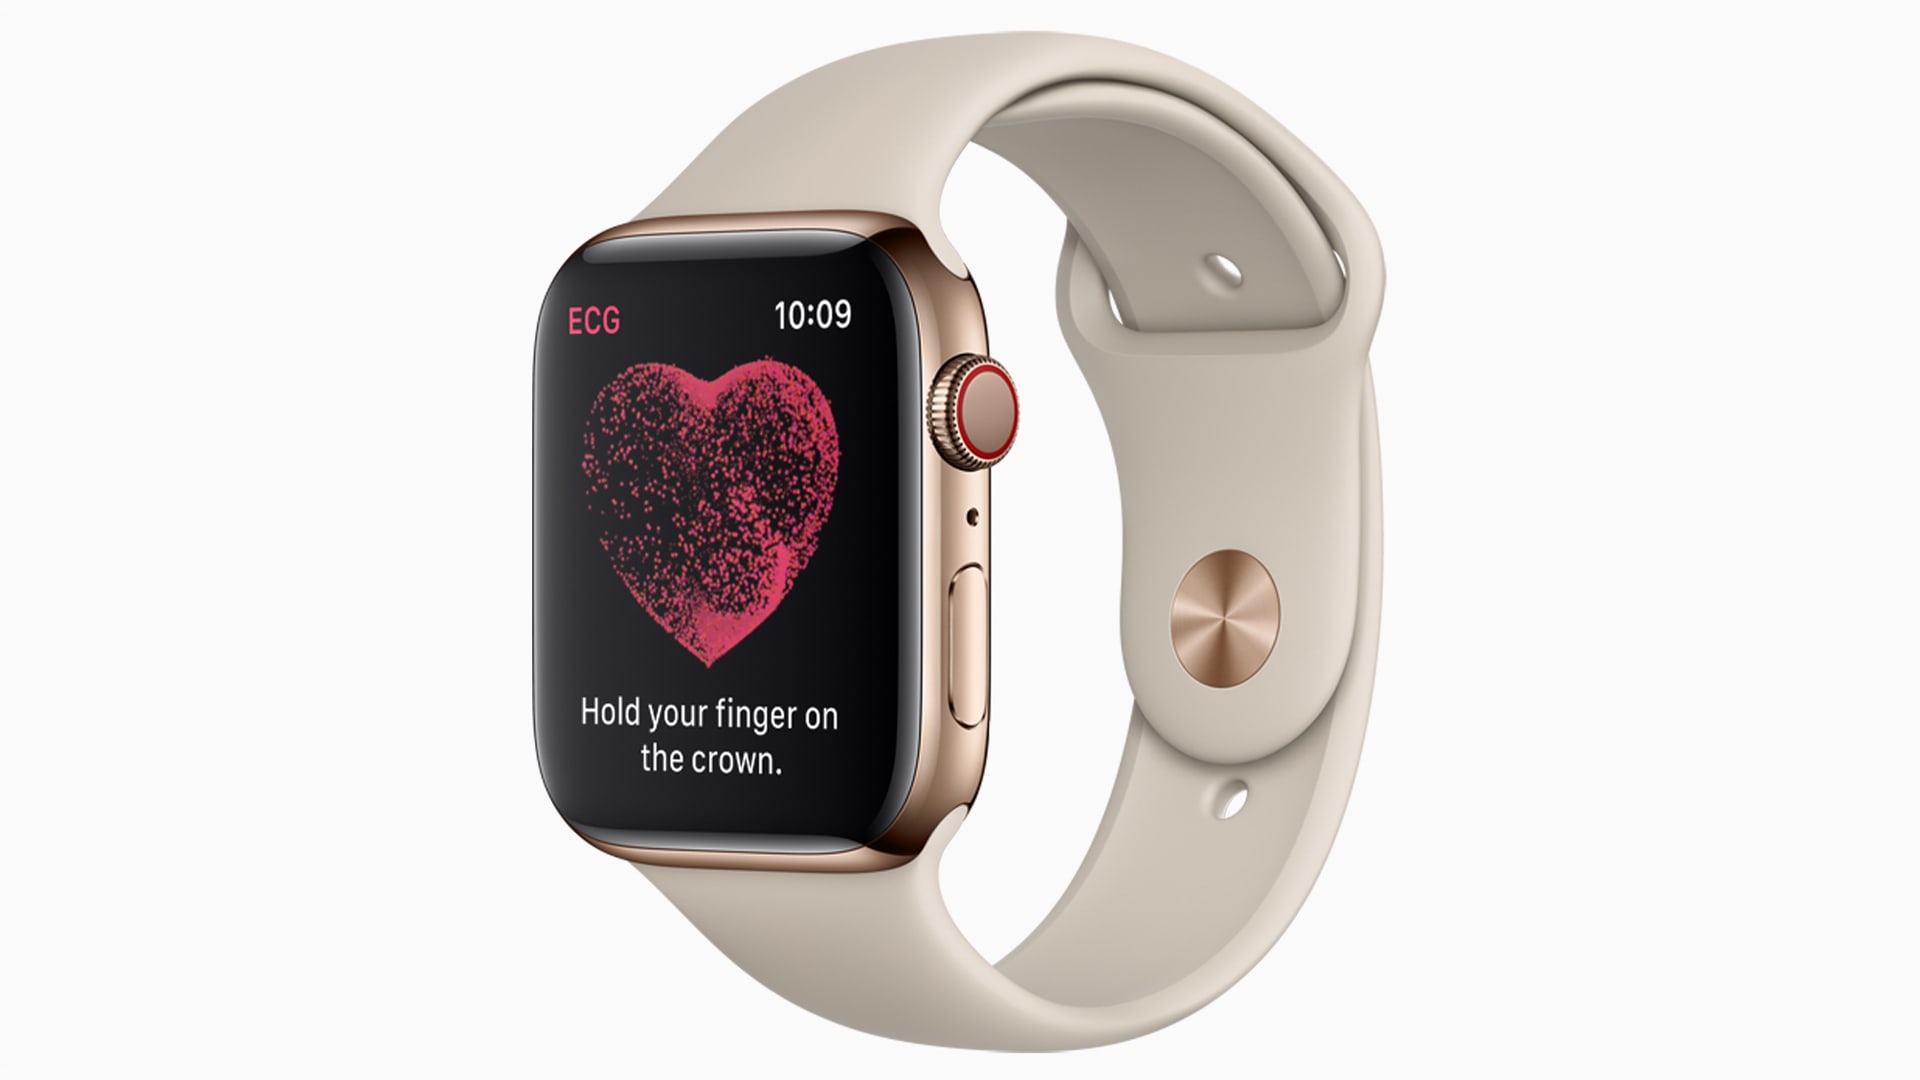 Whew! Apple Watch ECG was a heartbeat away from missing FDA nod